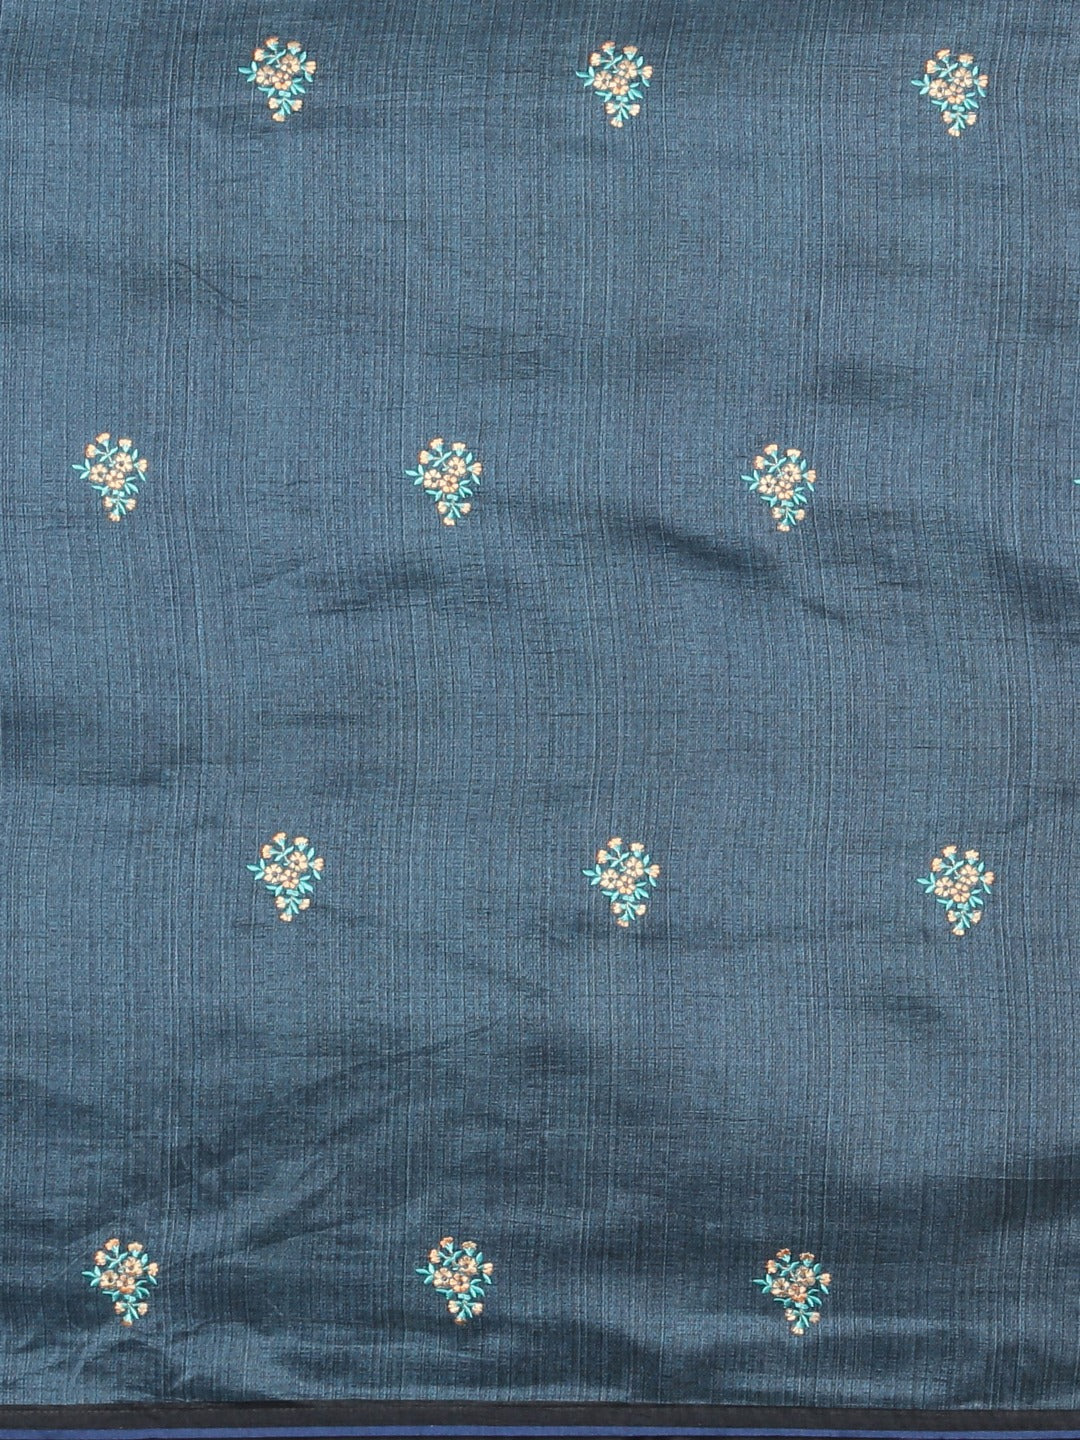 Neeru's Blue Printed Saree With Blouse